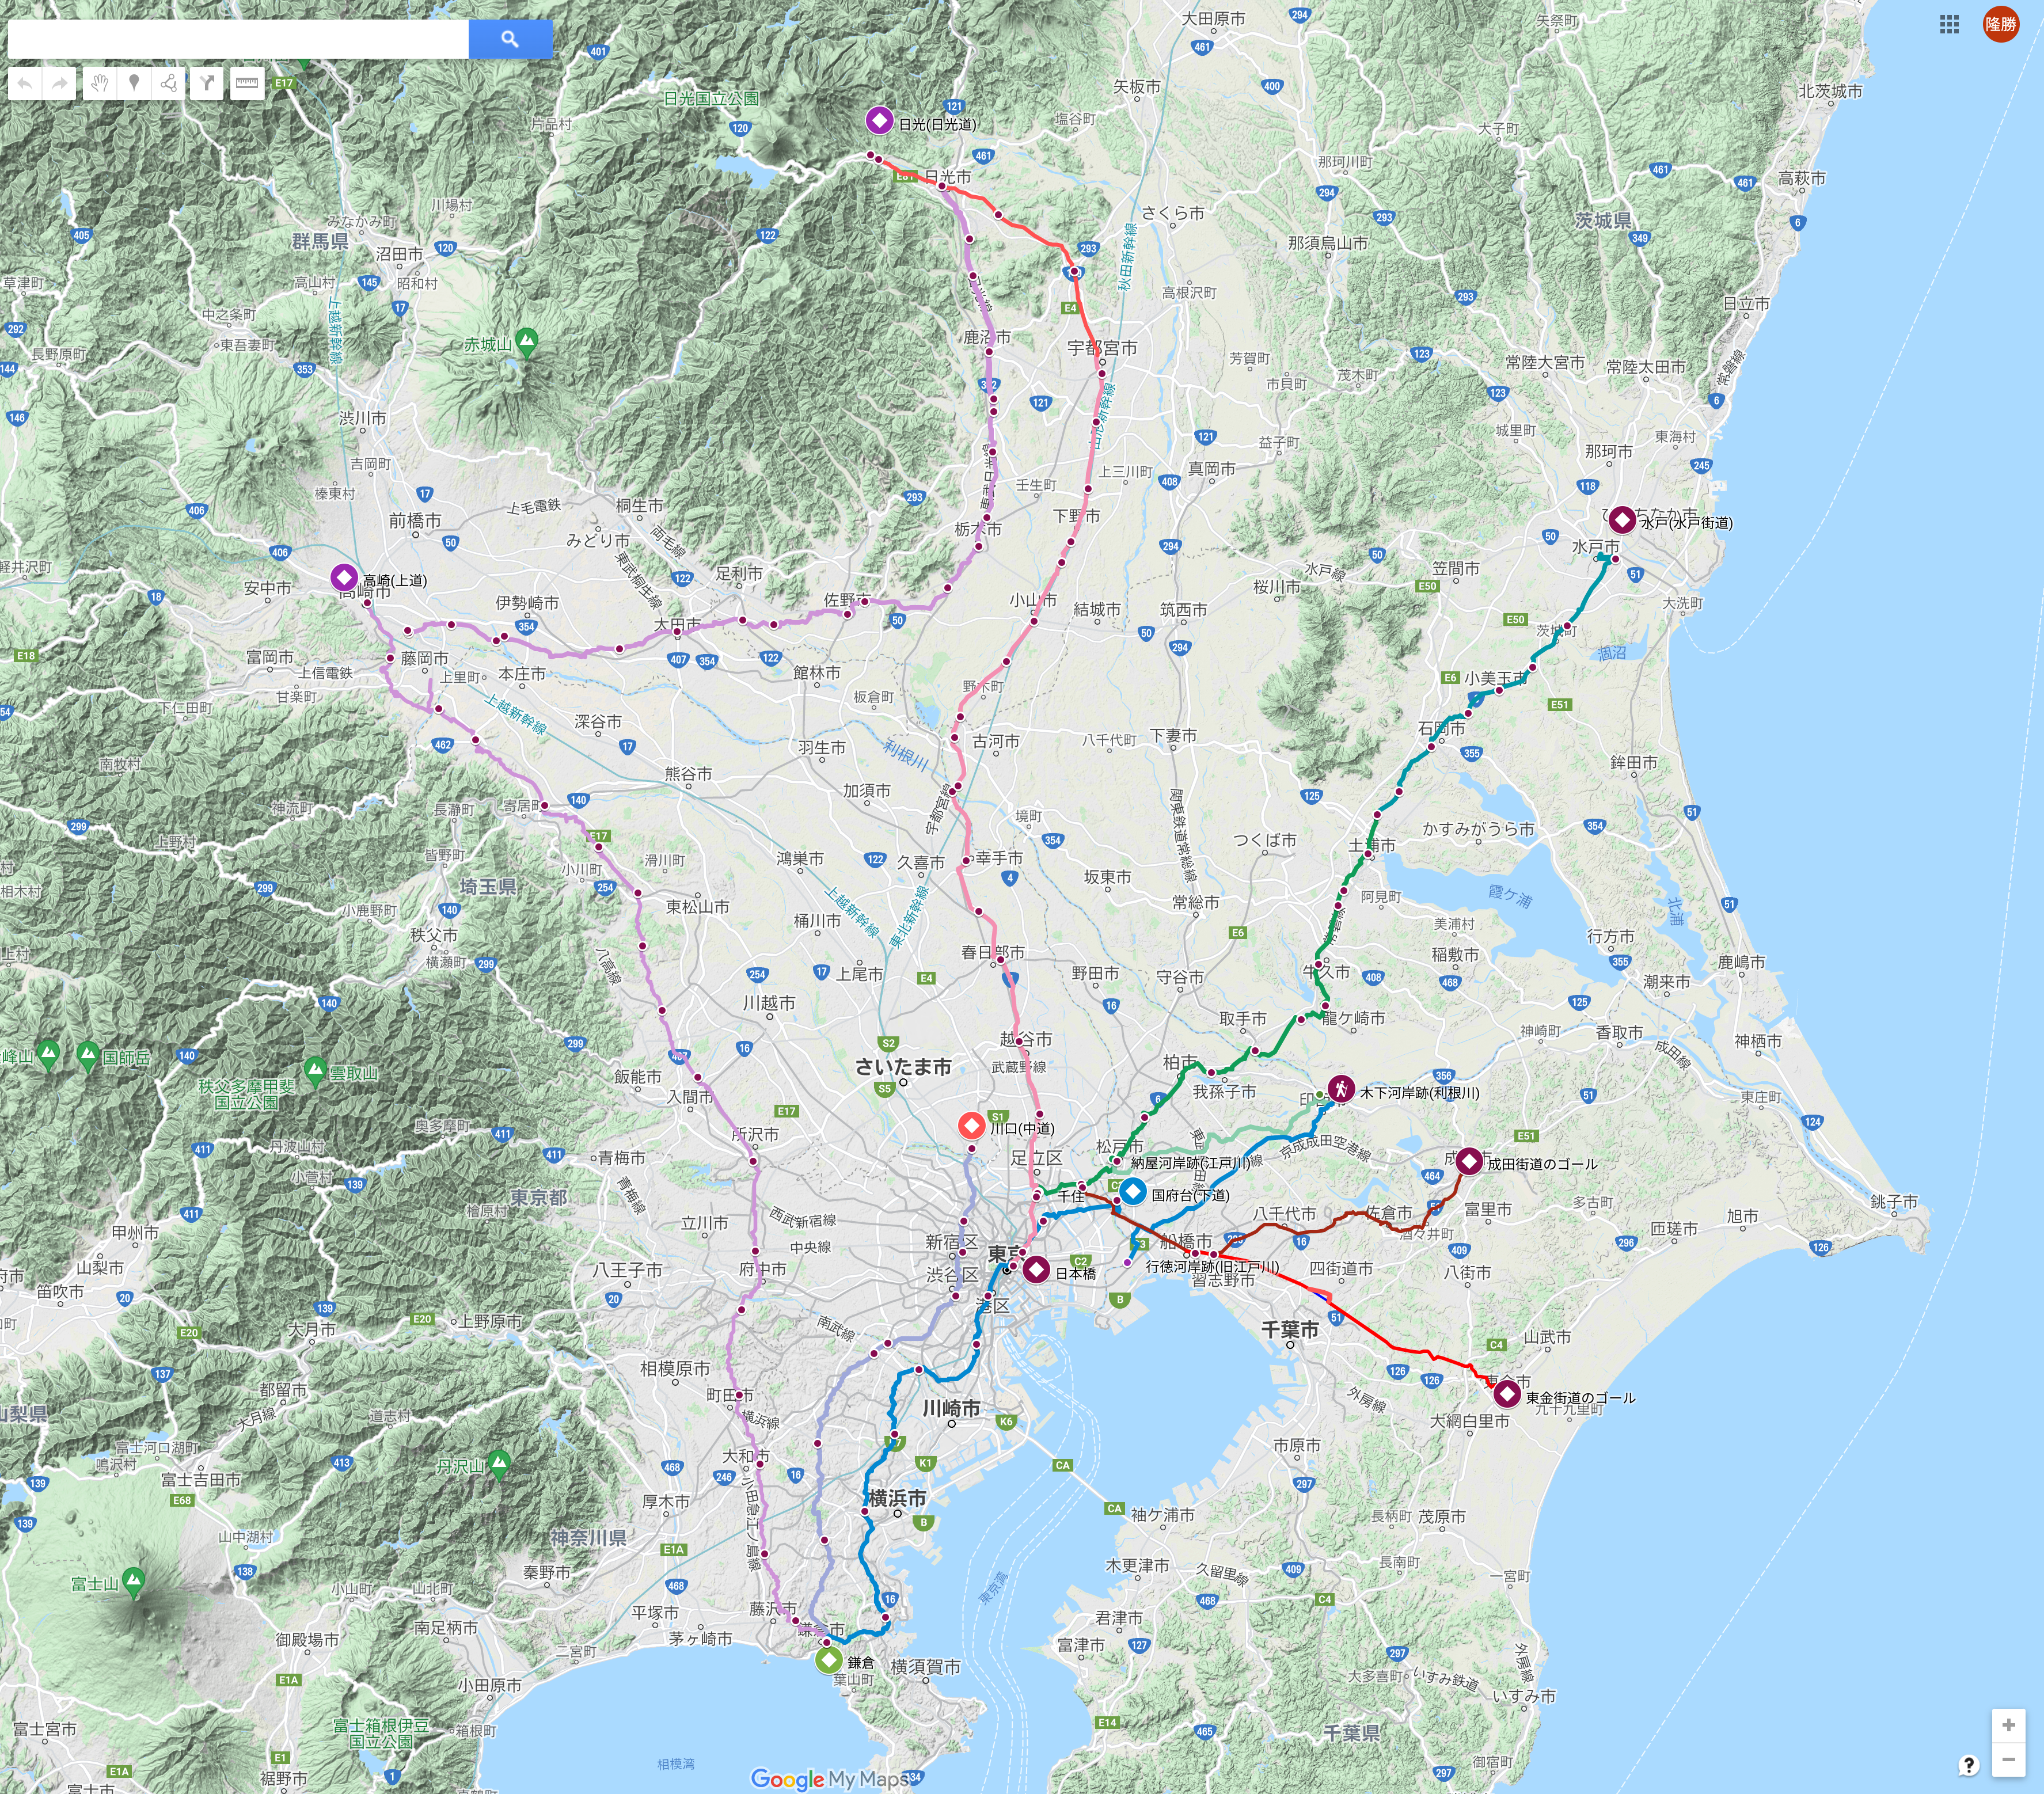 “A3:関東古道マップ(計画中を含めて)”